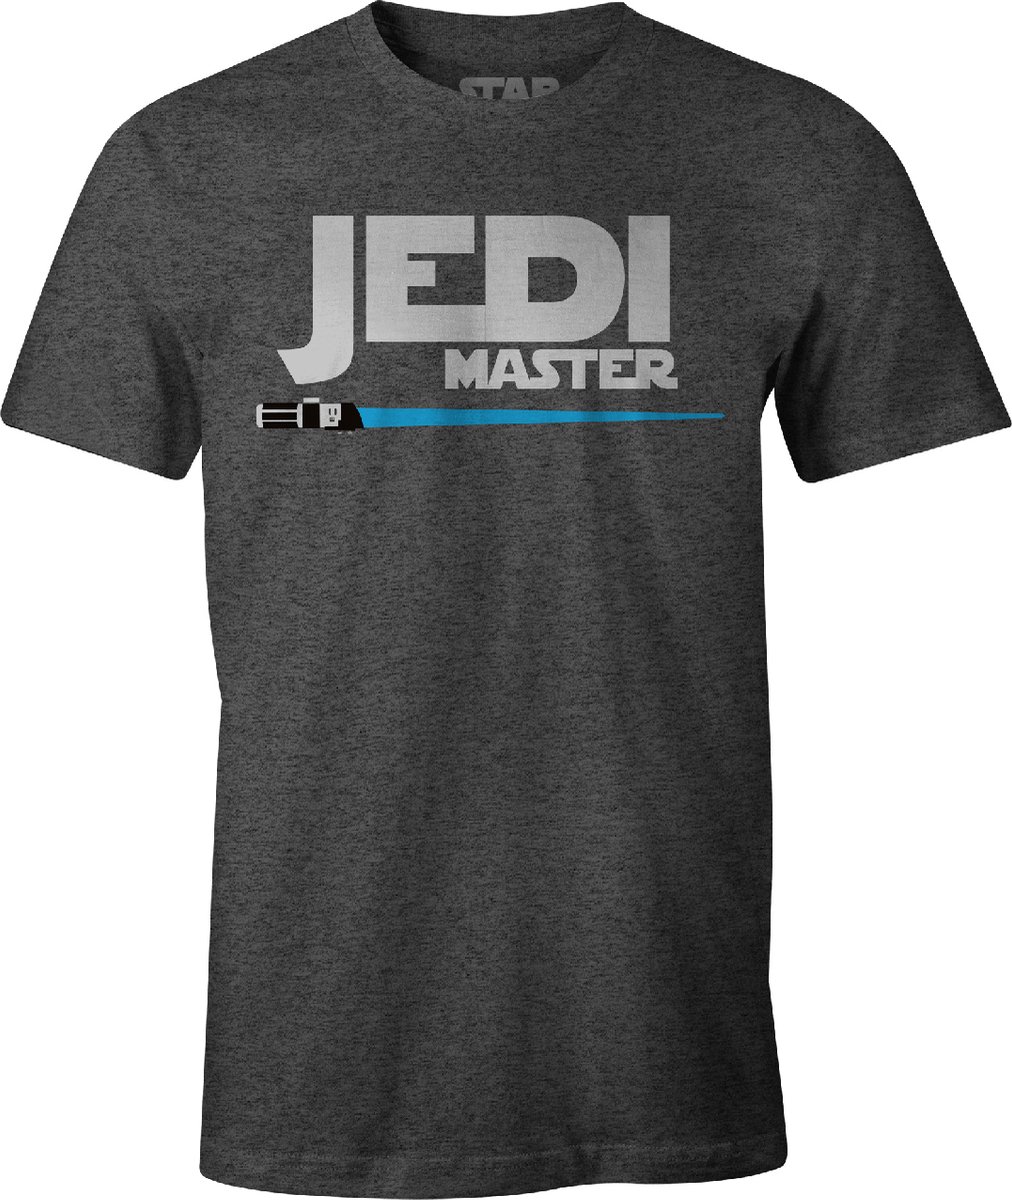 Star Wars - Jedi Master T-Shirt Black - XL